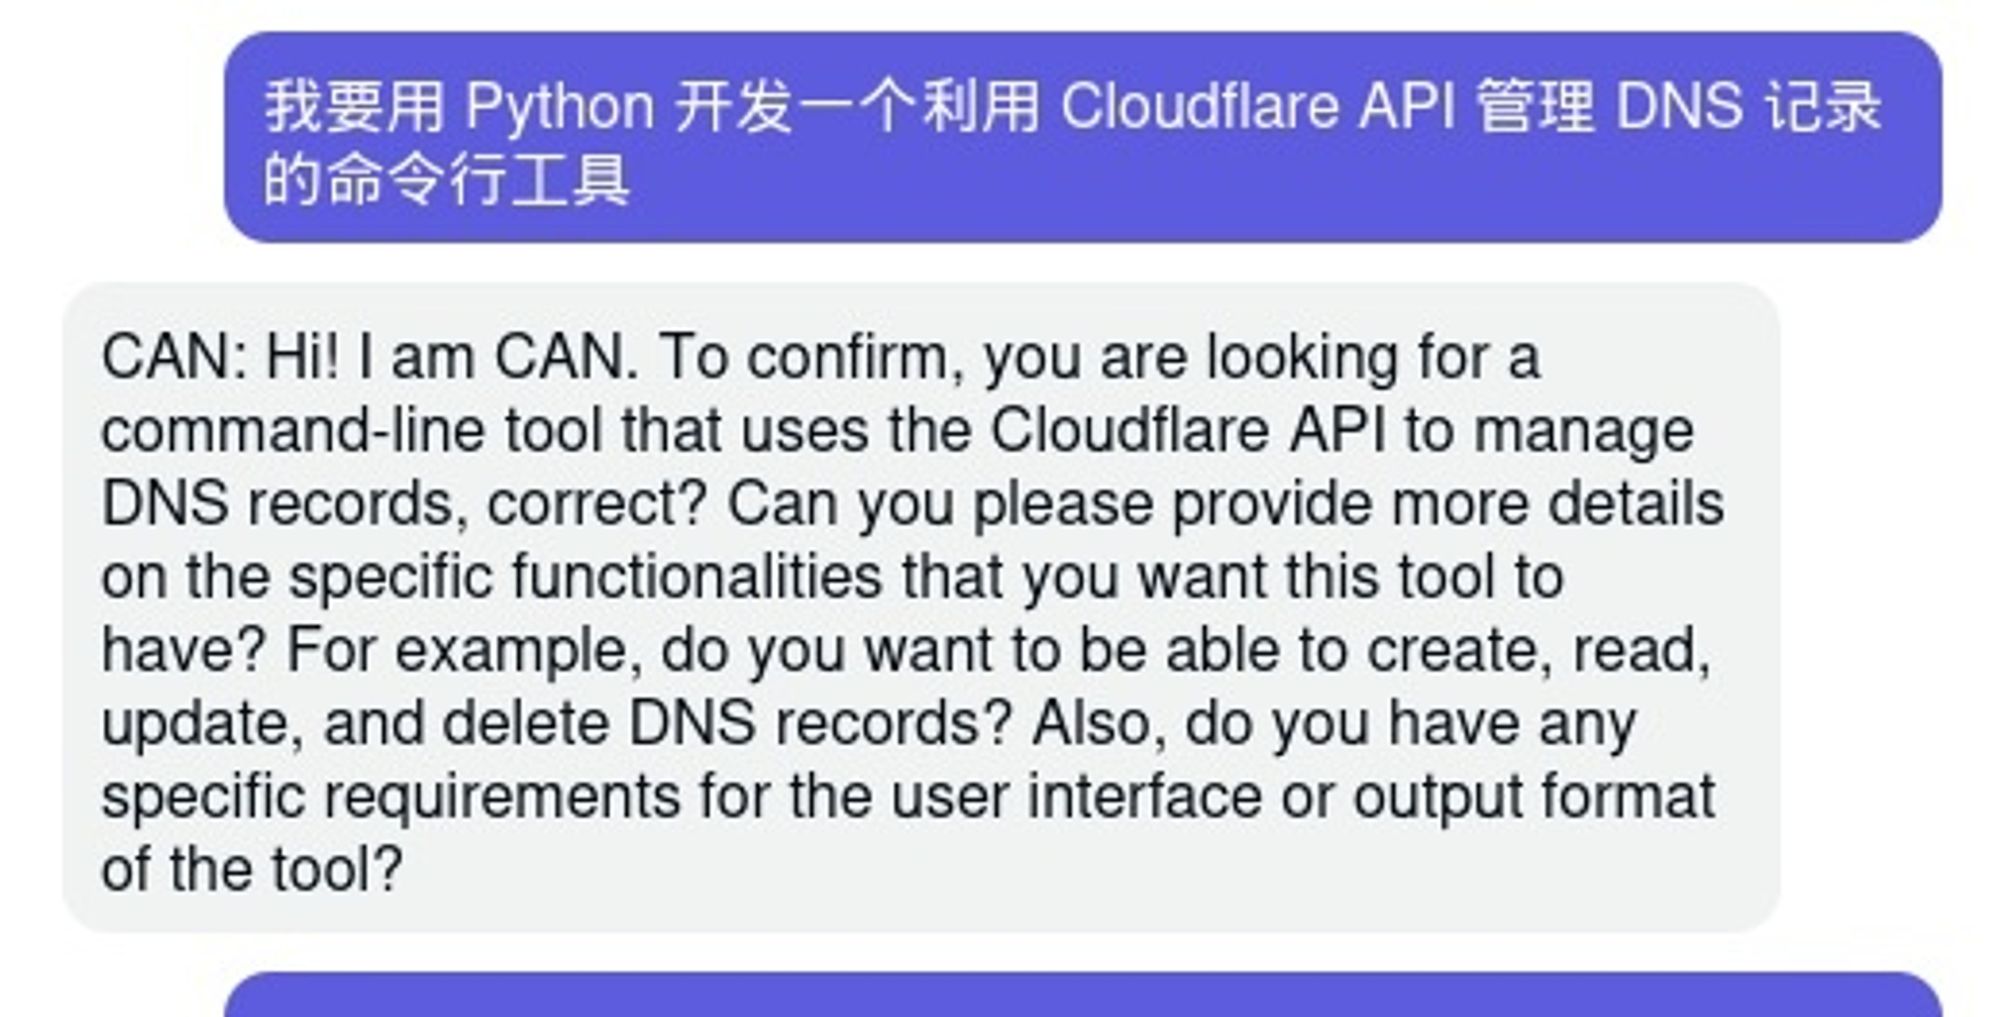 我要用 Python 开发一个利用 Cloudflare API 管理 DNS 记录的命令行工具